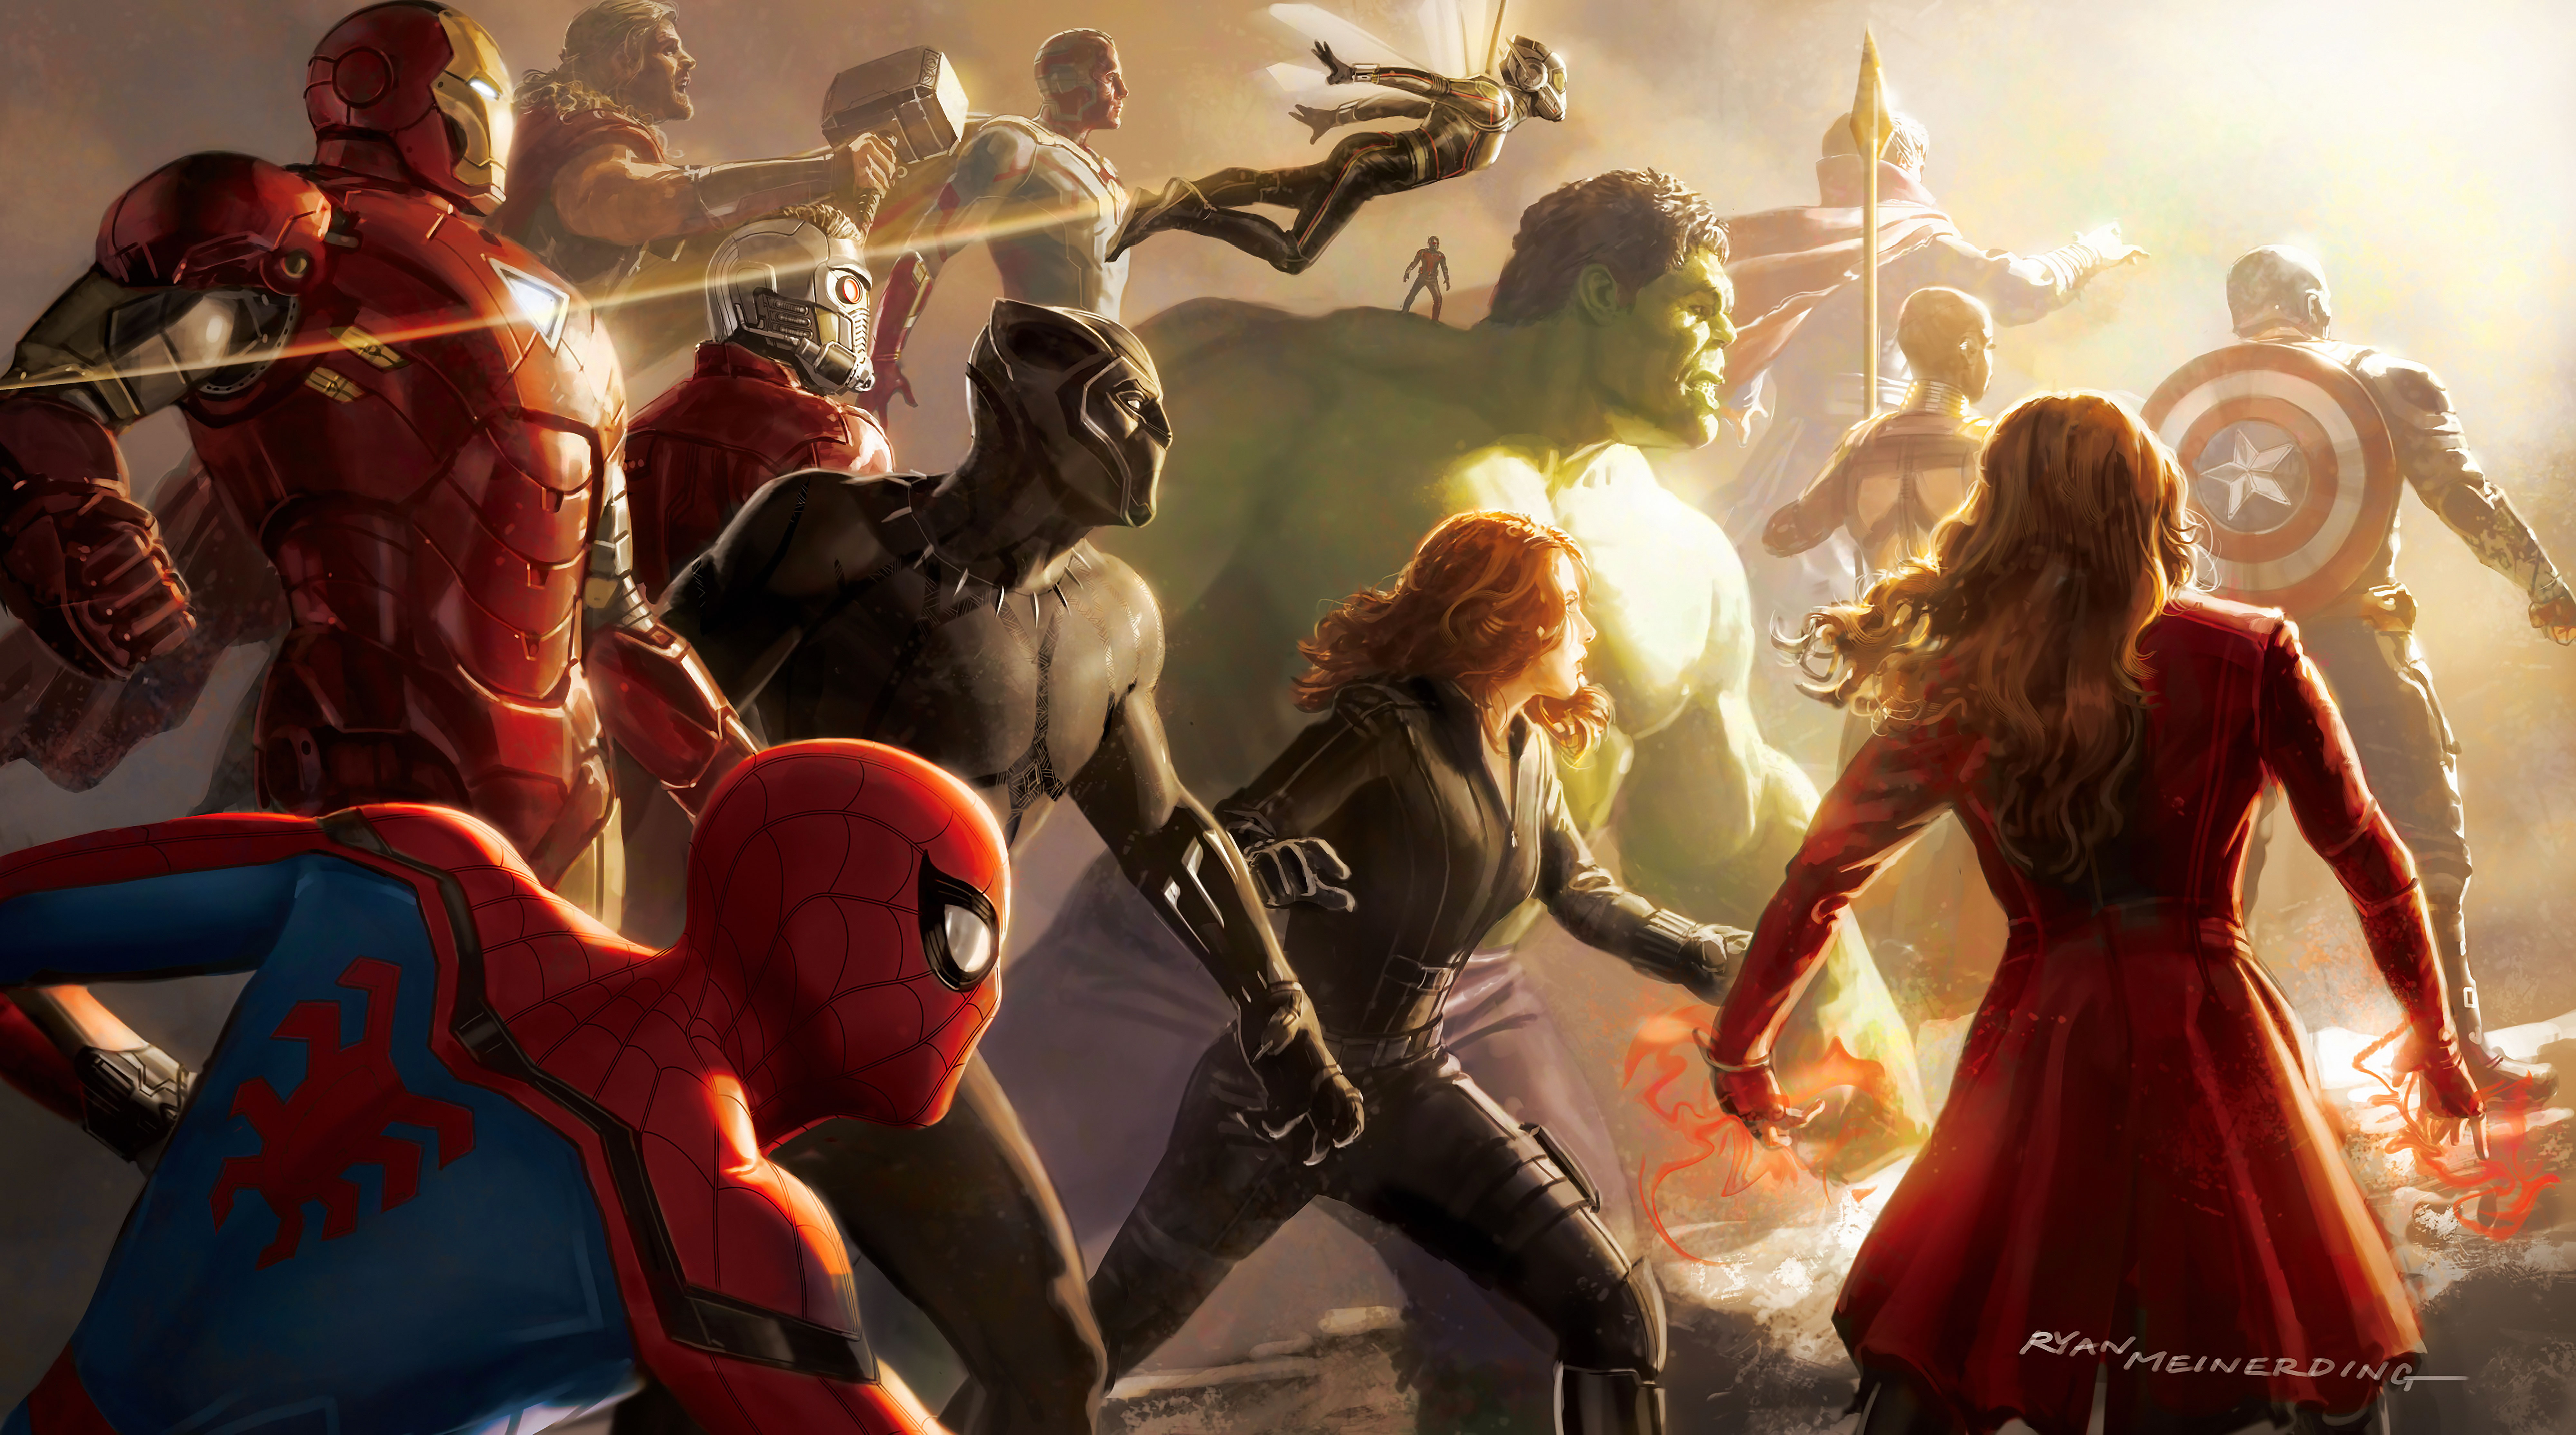 Okoye In Avengers Endgame Wallpapers